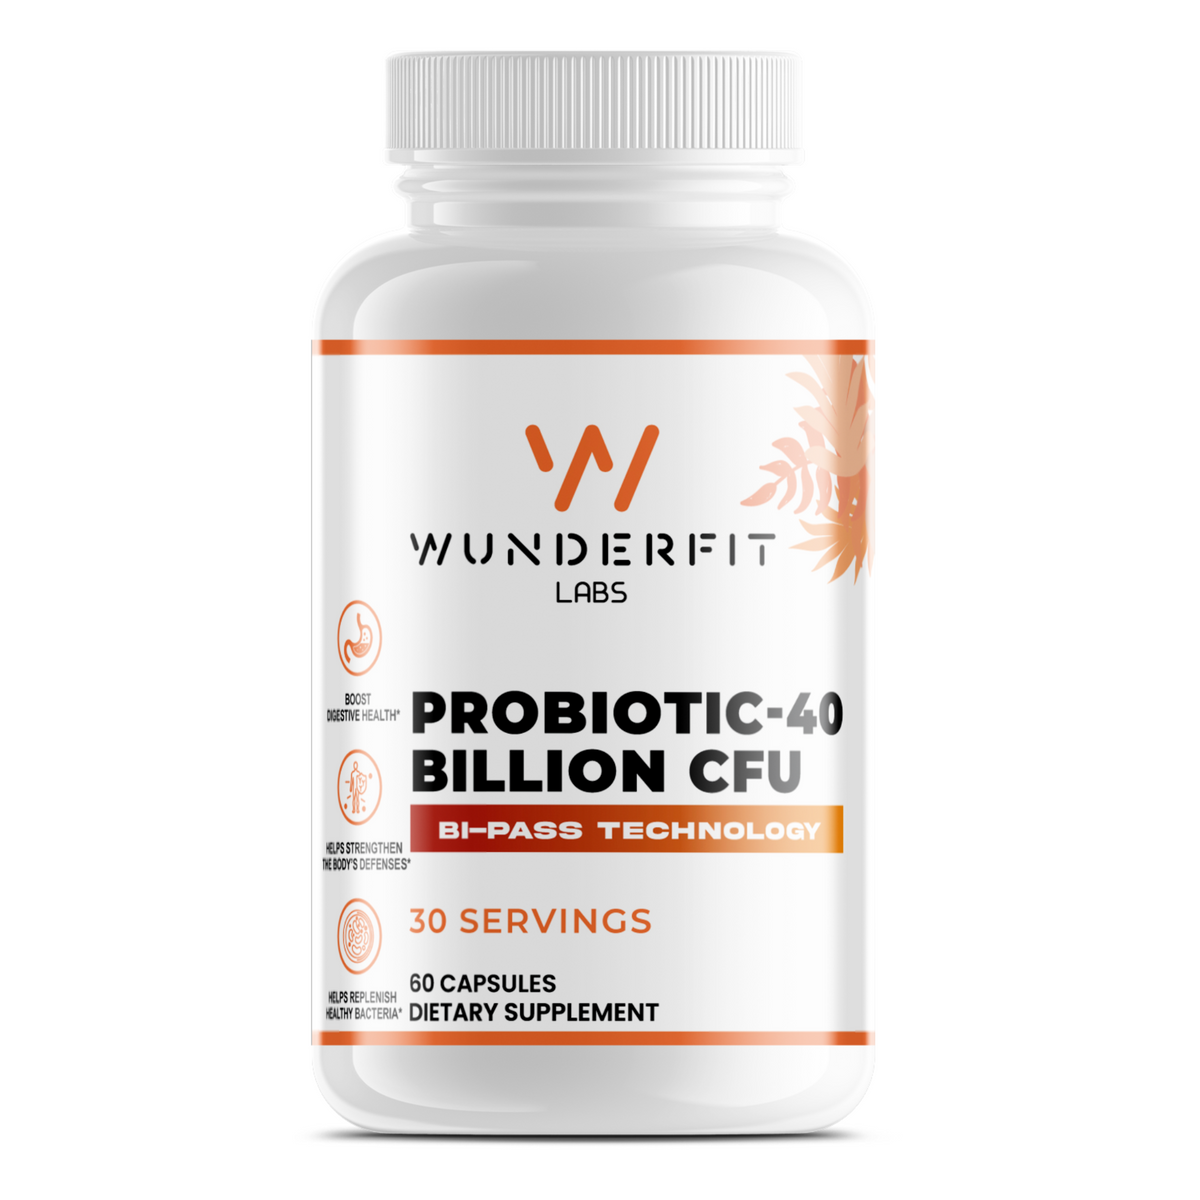 Probiotic-40 Billion CFU, Capsules, 30 Servings